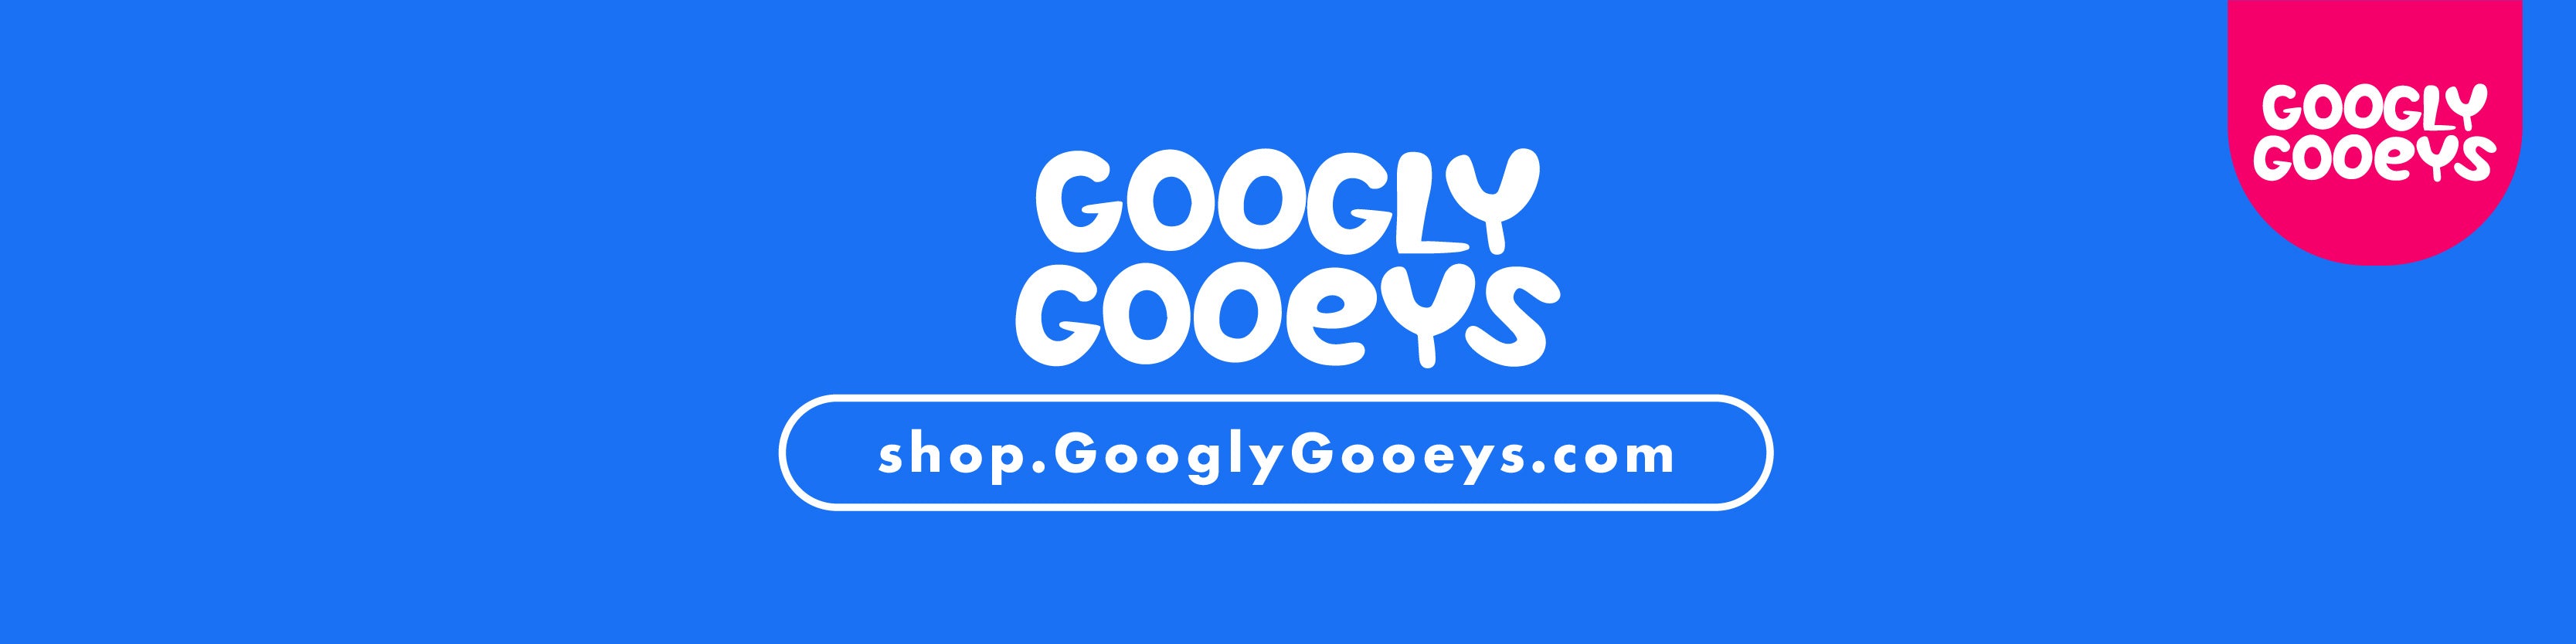 Googly Gooeys